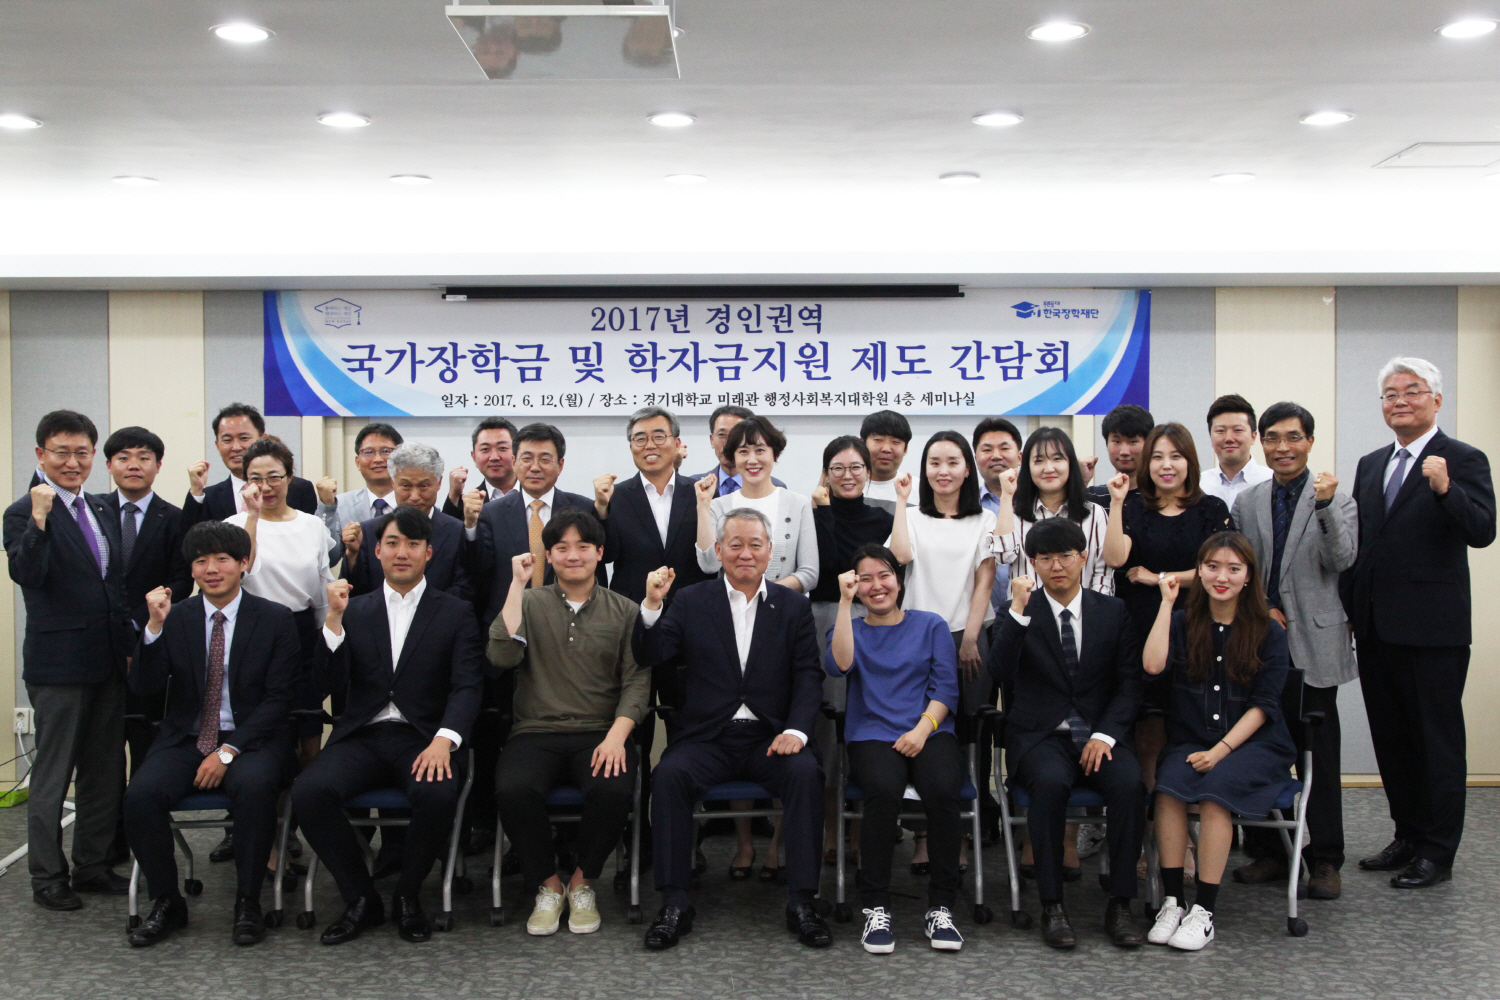 Korea Student Aid Foundation (KOSAF) (kosaf.go.kr)